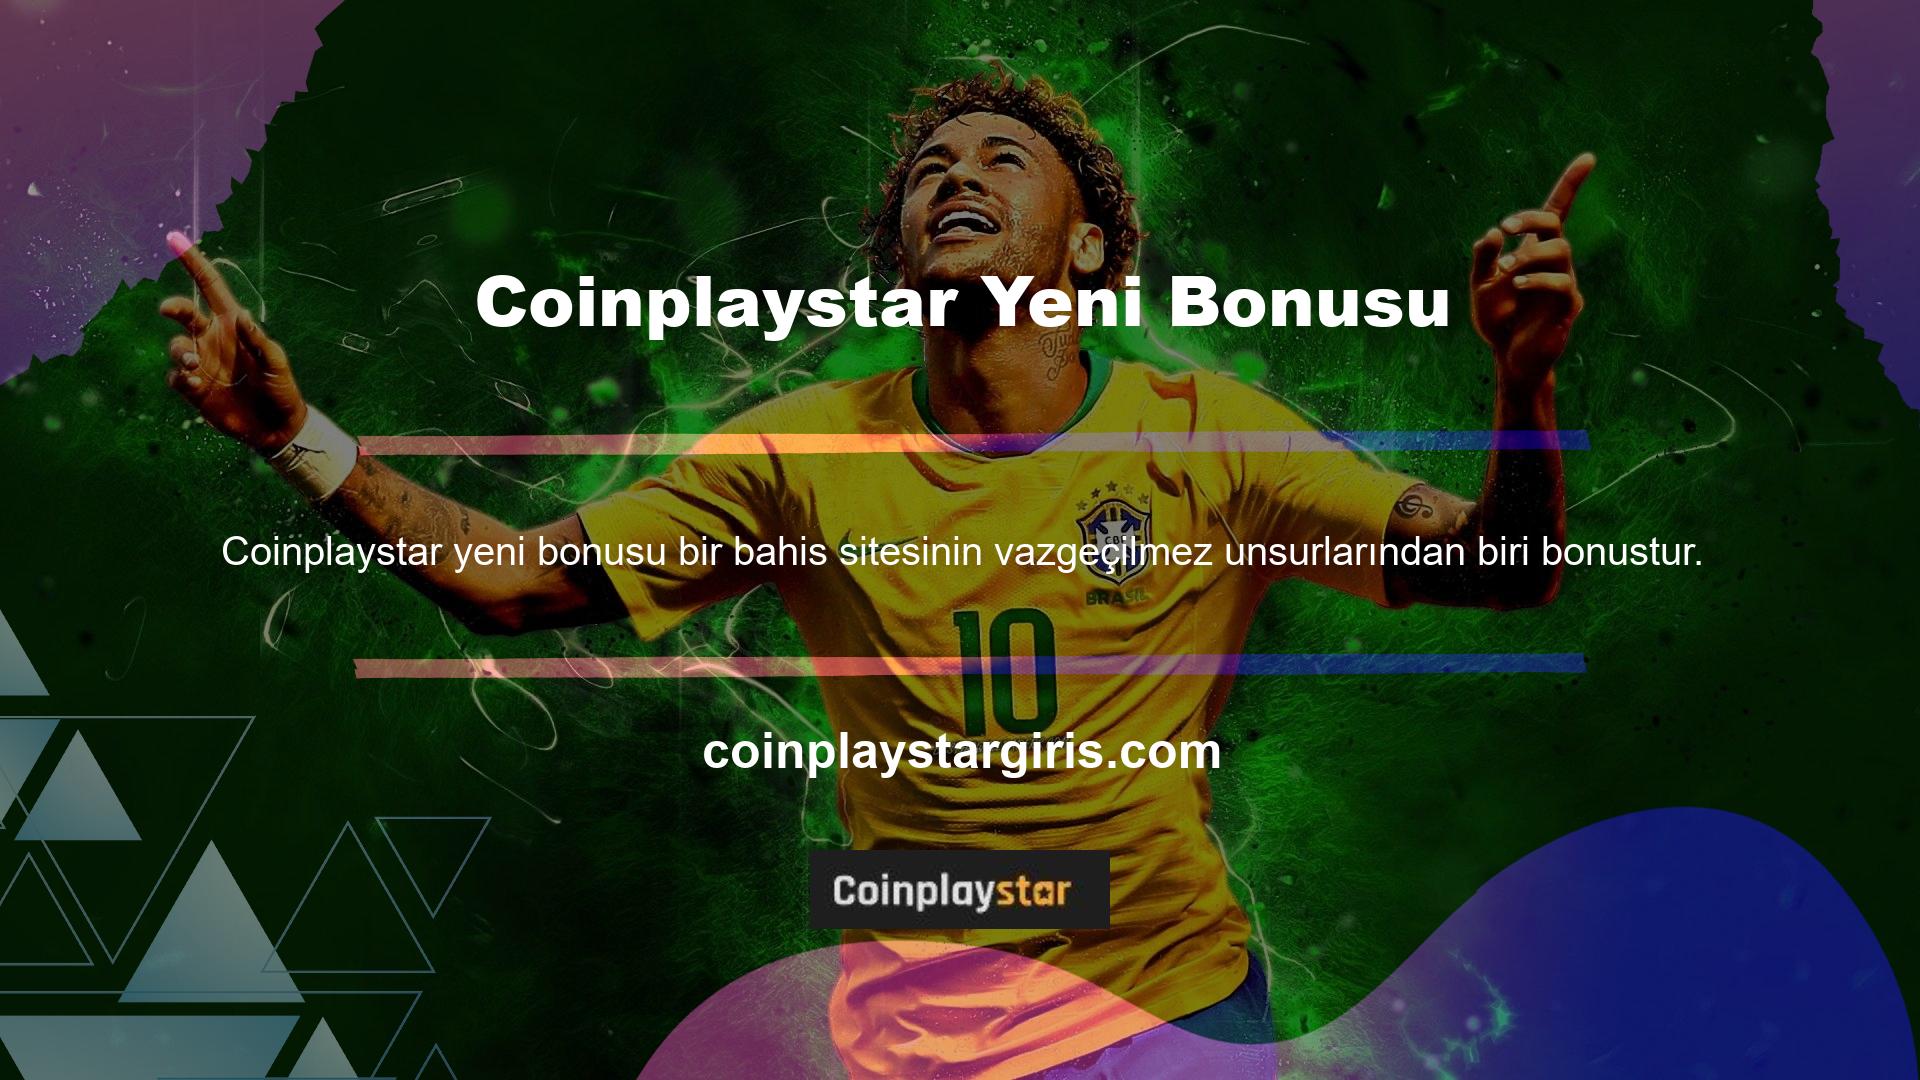 Coinplaystar bonuslarına baktıktan sonra bu sitenin kaliteli bonuslara sahip olduğunu söylemek kolaydır